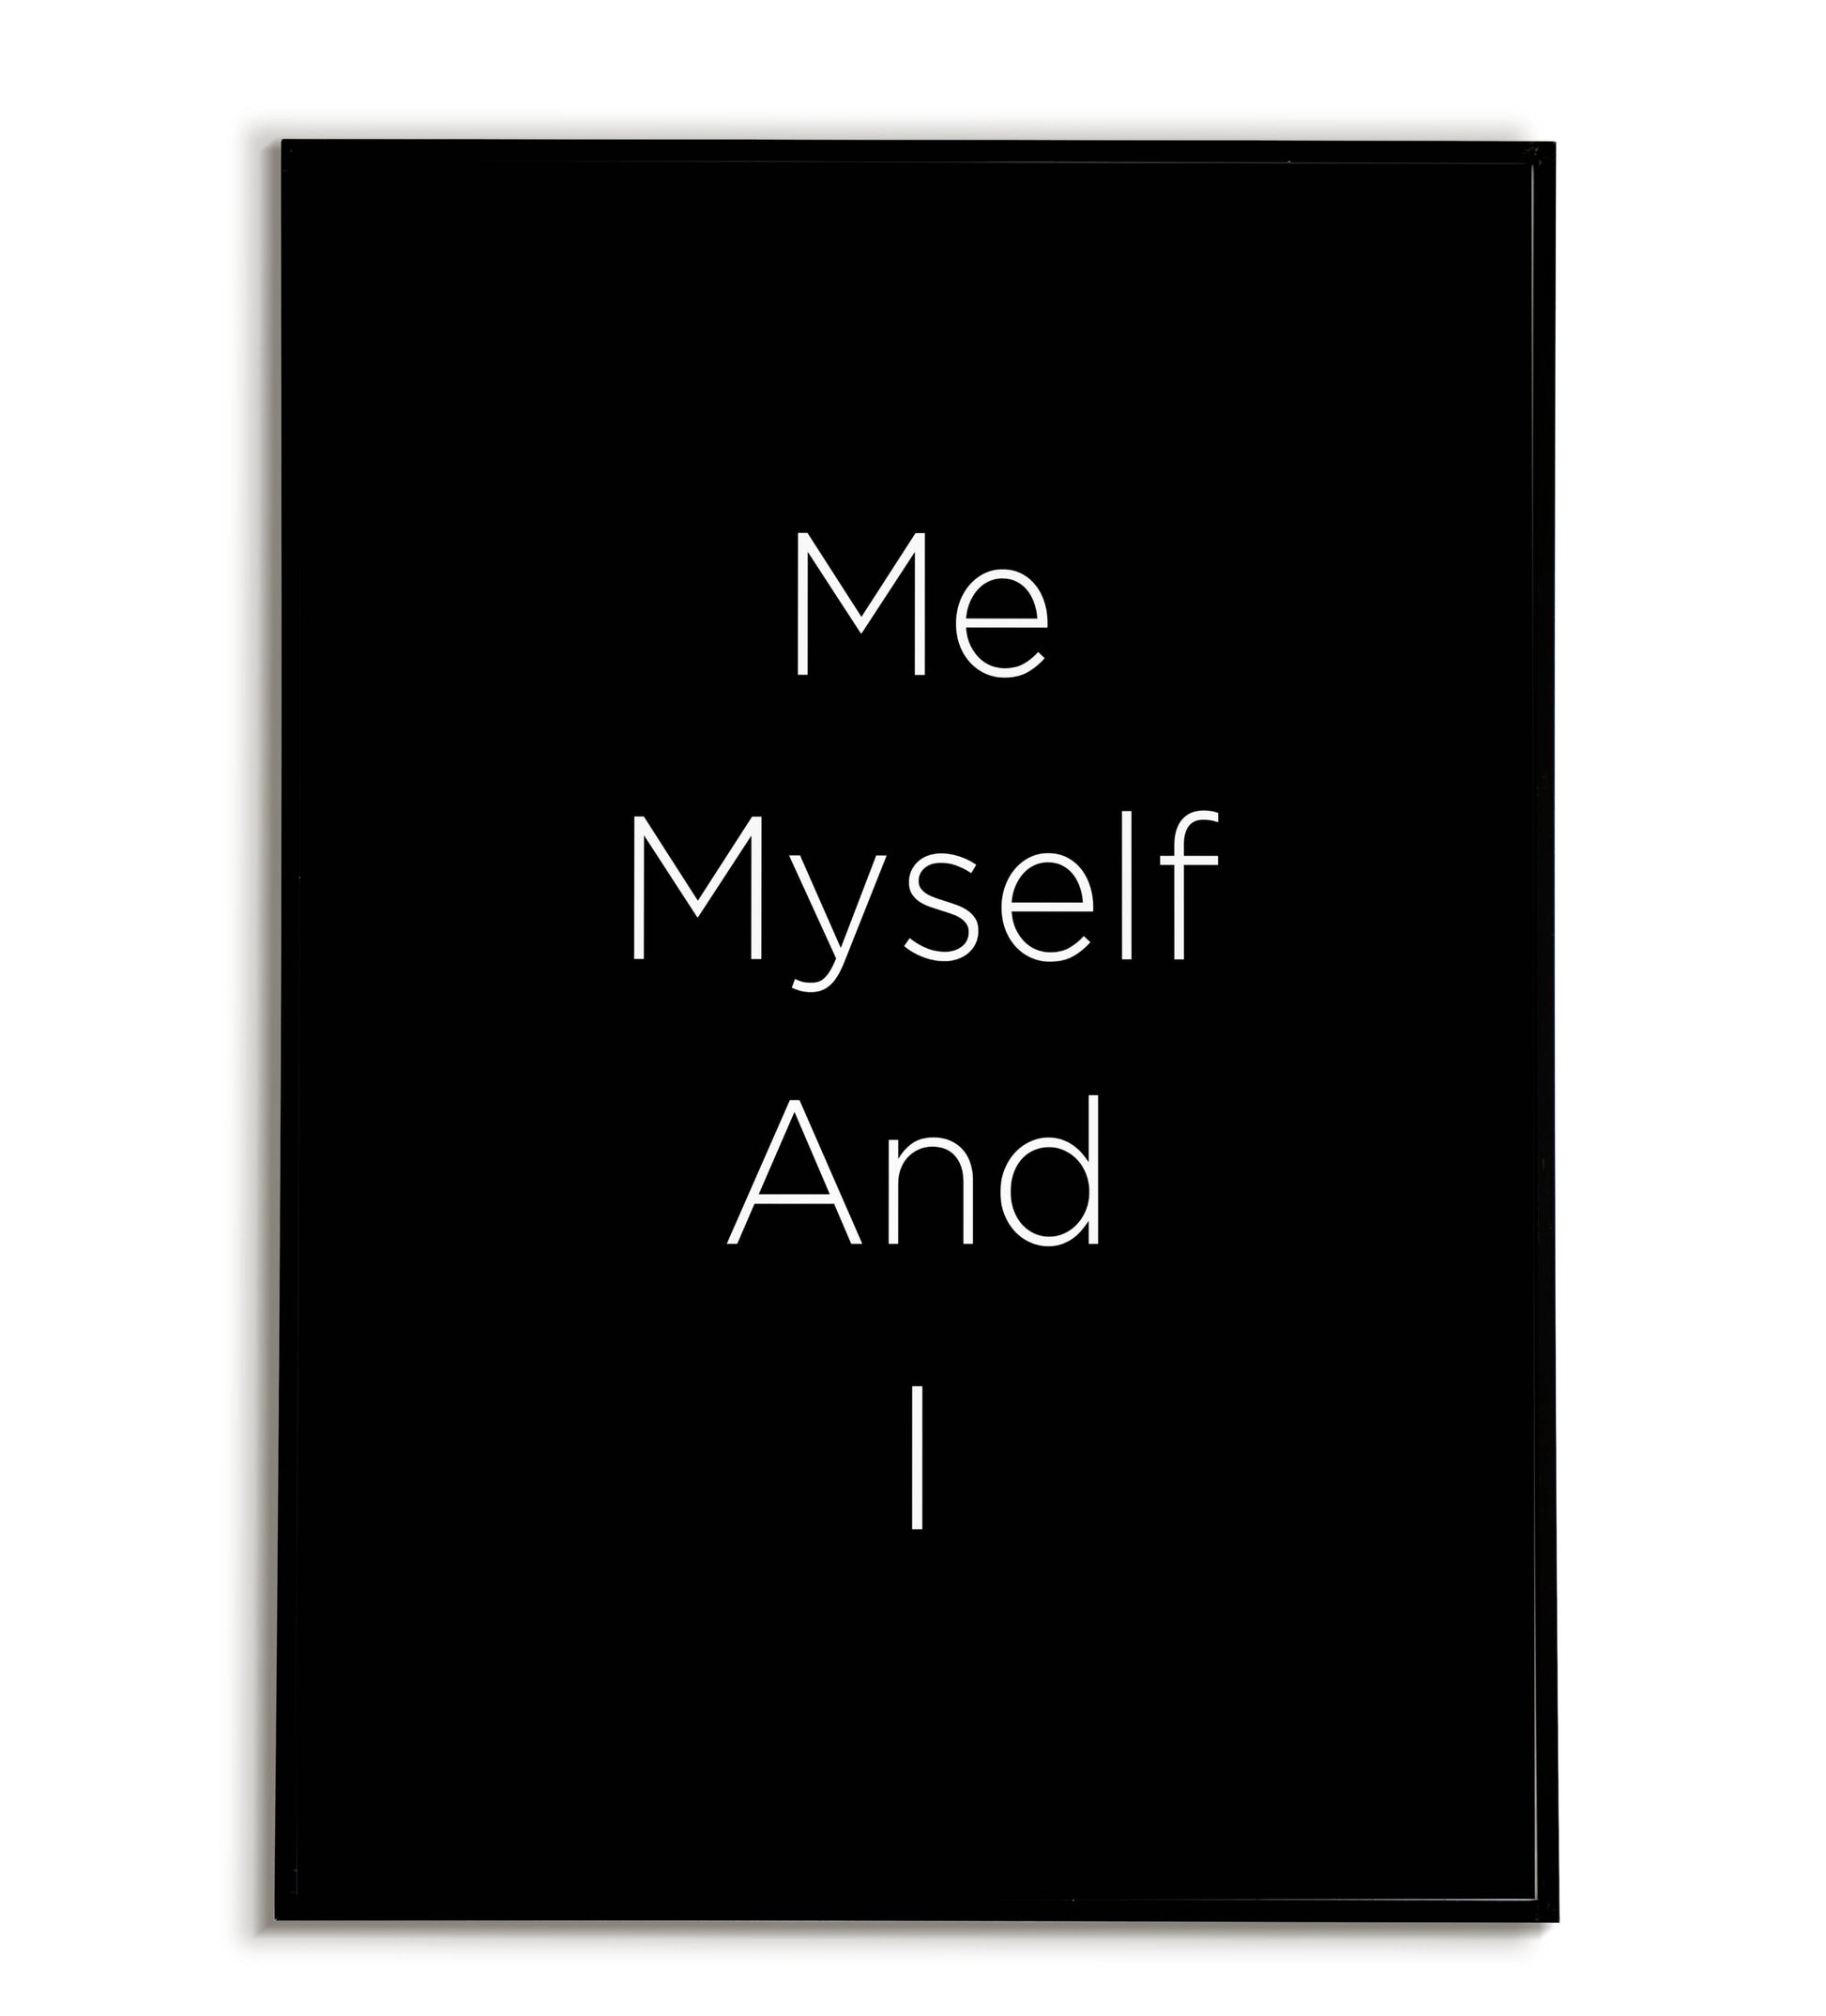 "Me myself and I" printable self-love poster.